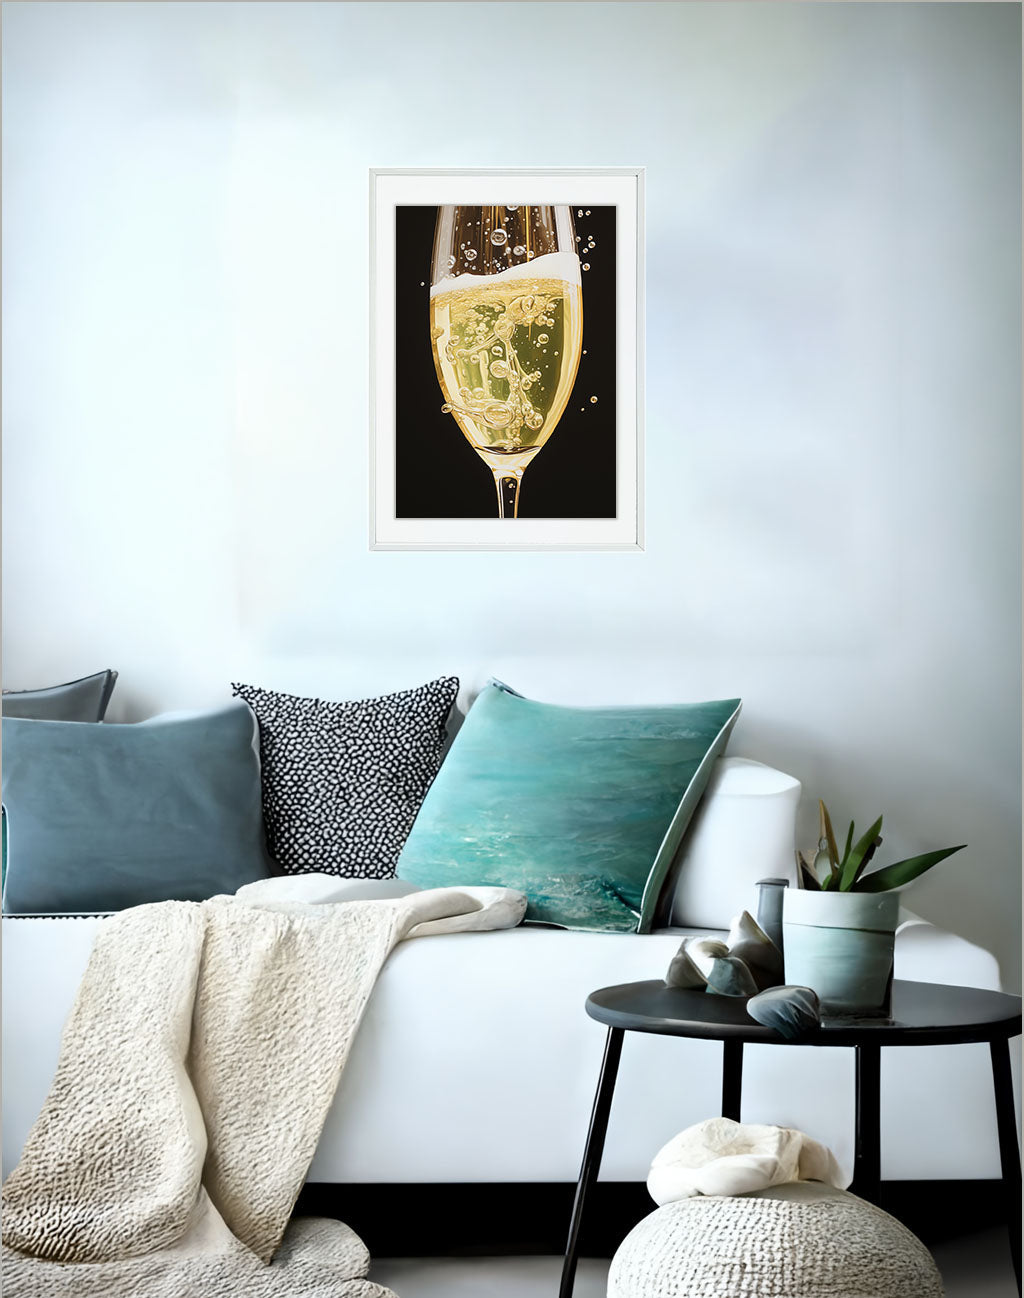 シャンパンのアートポスターソファ配置イメージ